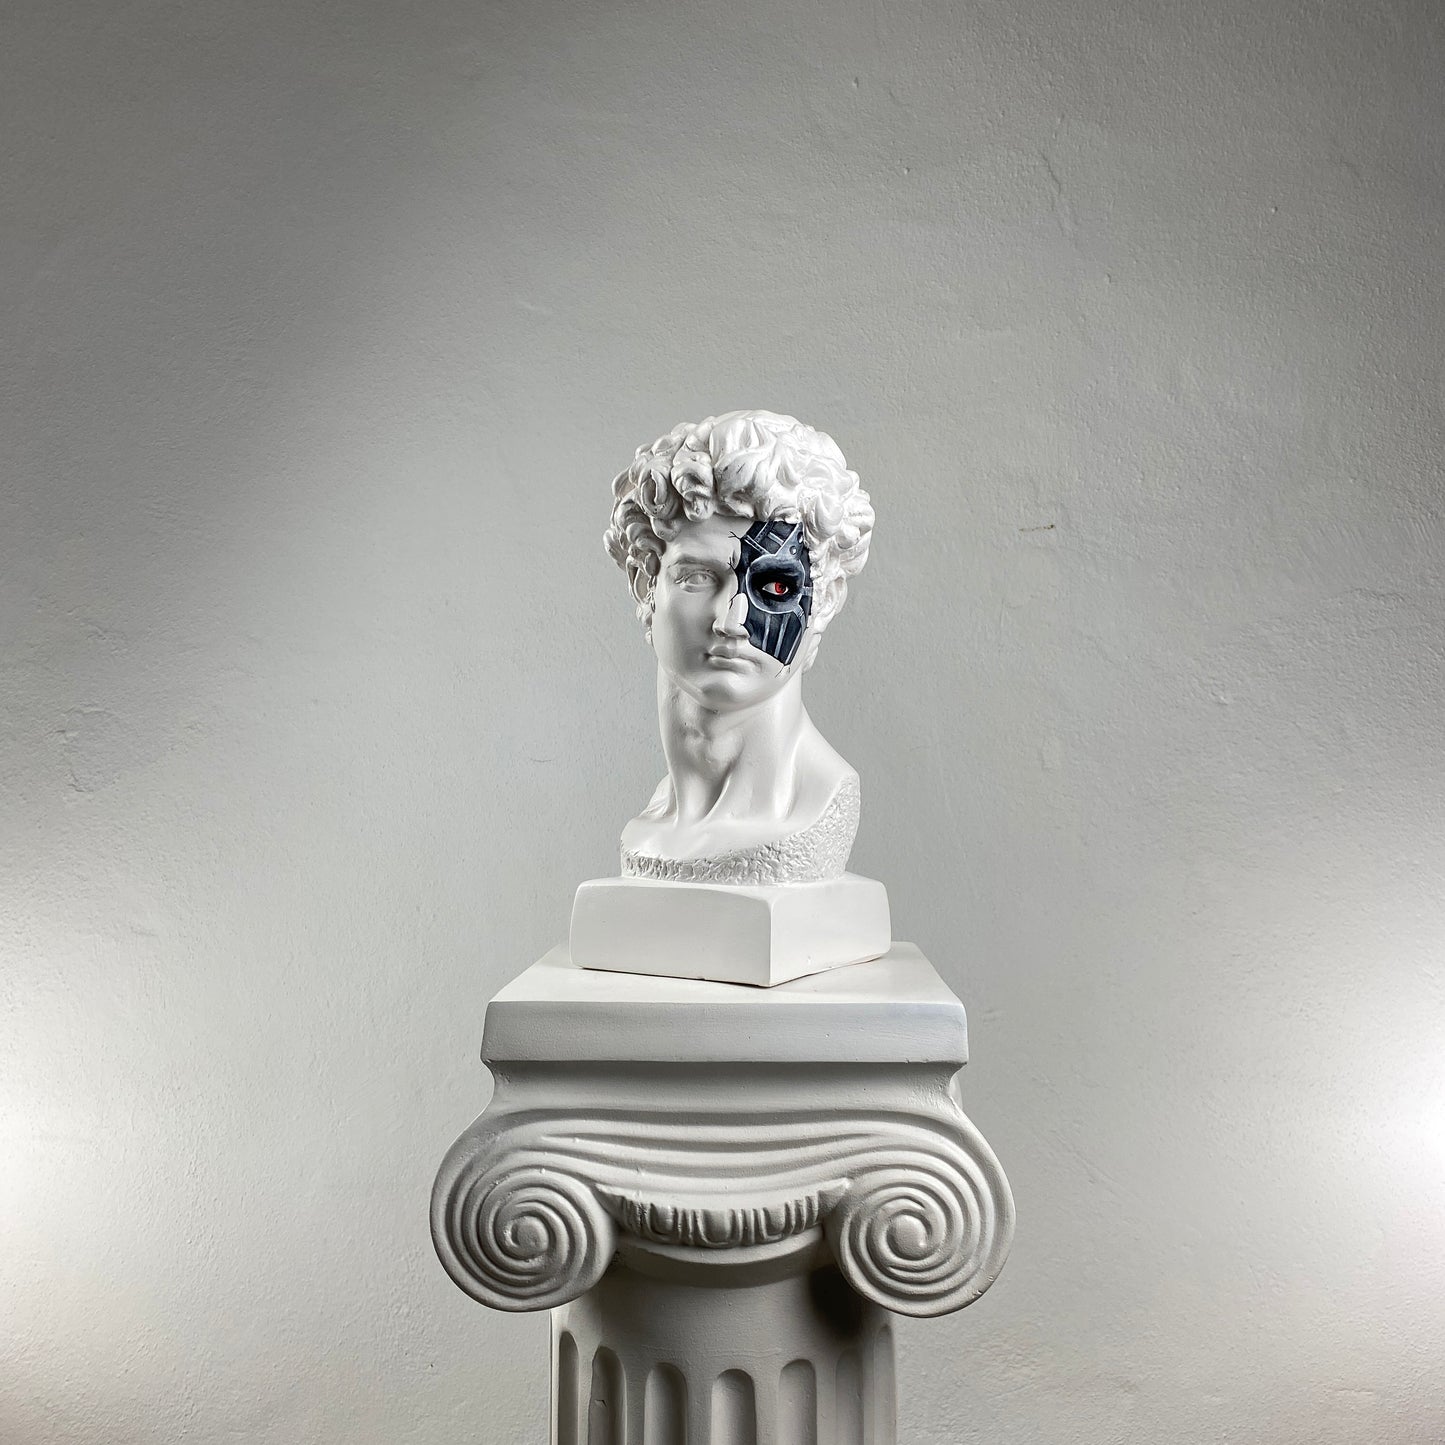 David 'Cyborg' Pop Art Sculpture, Modern Home Decor